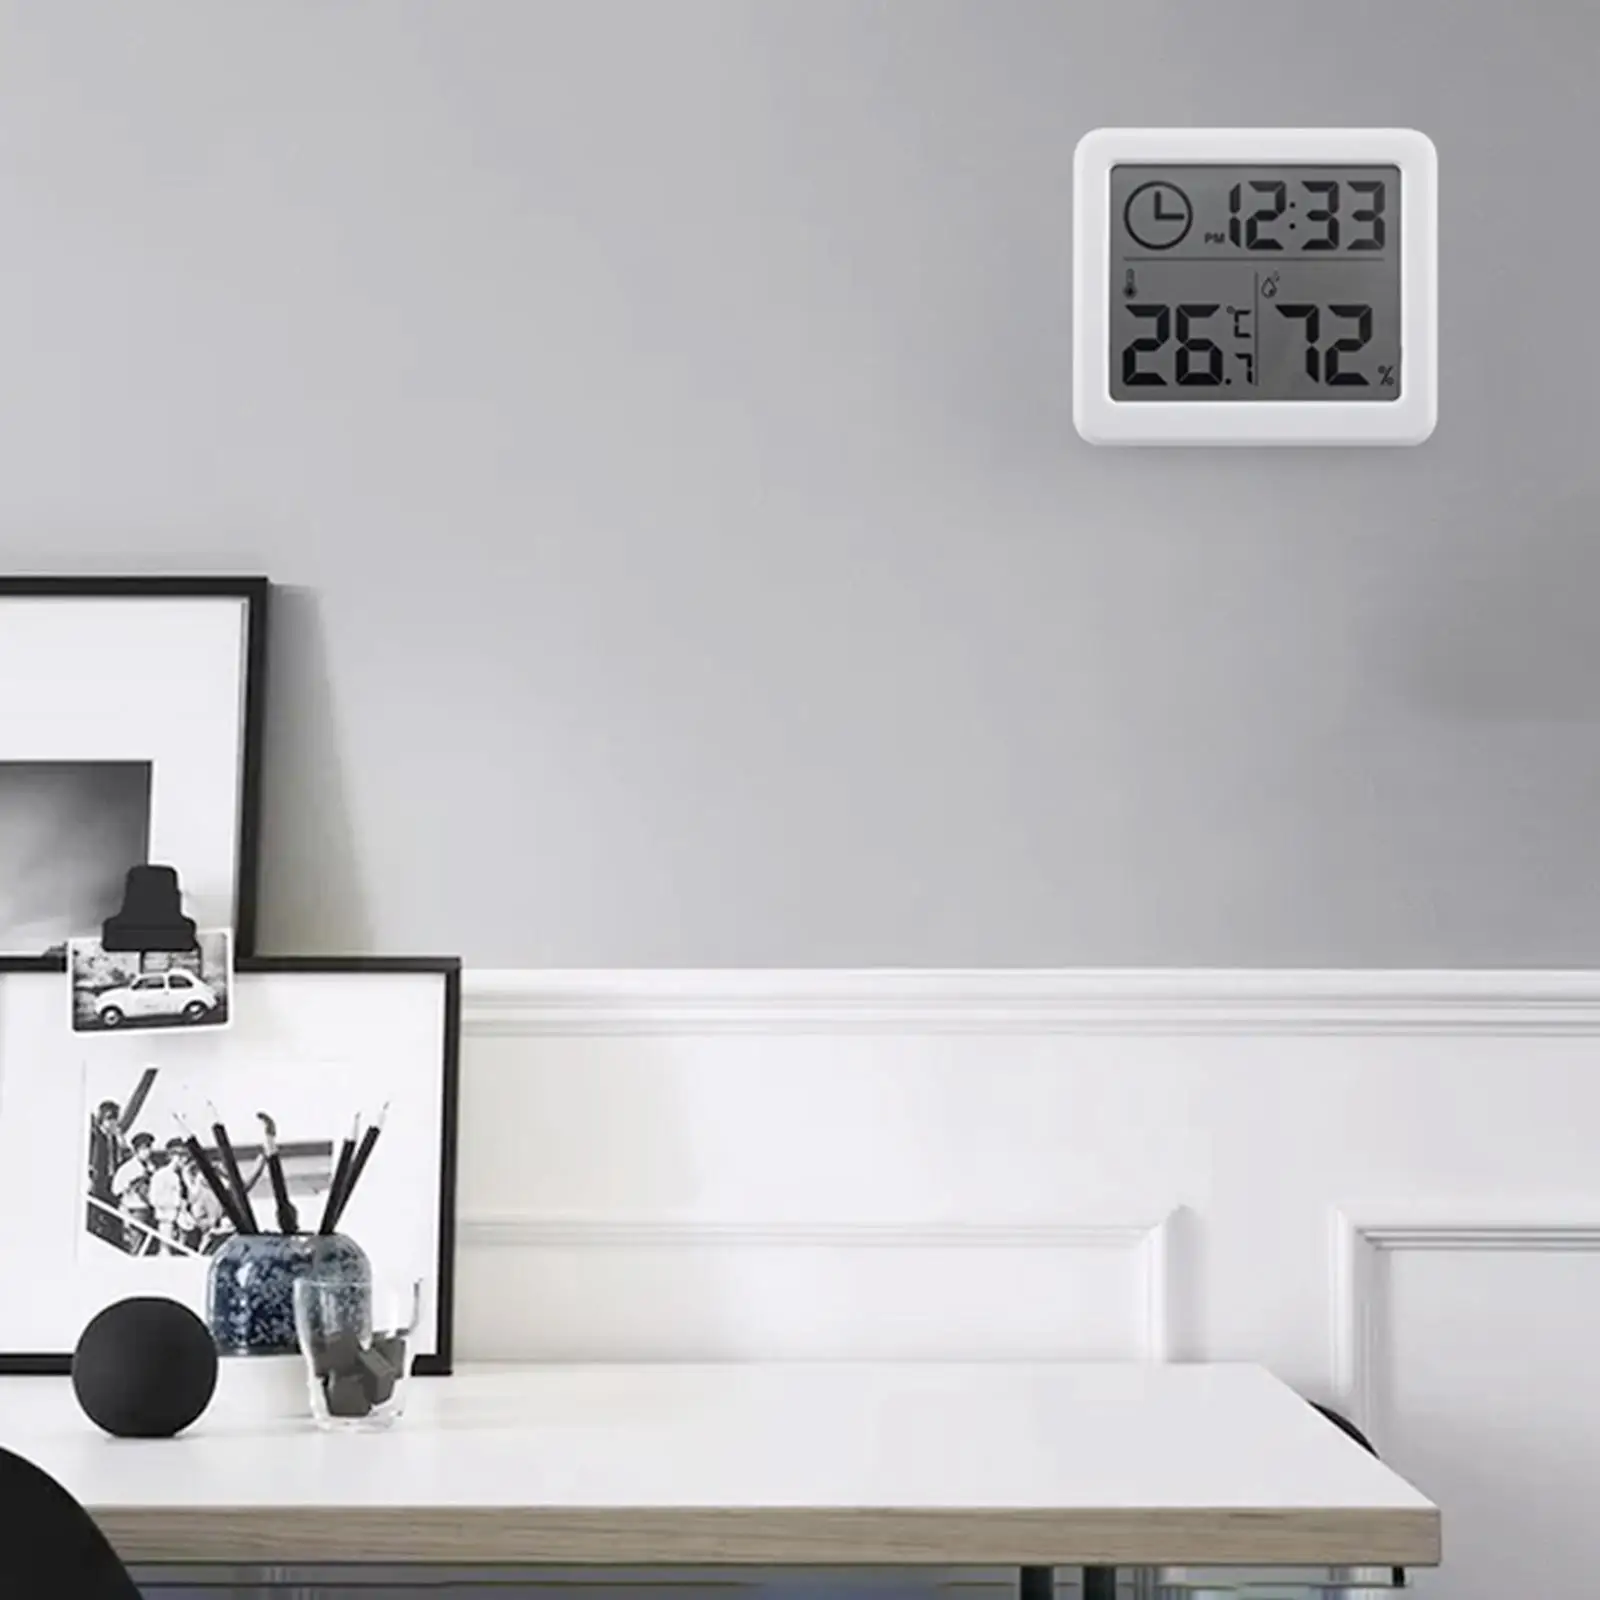  Hygrometer  Clock Function Temperature Battery LCD  Meter for Indoor Restaurants Closet  Room